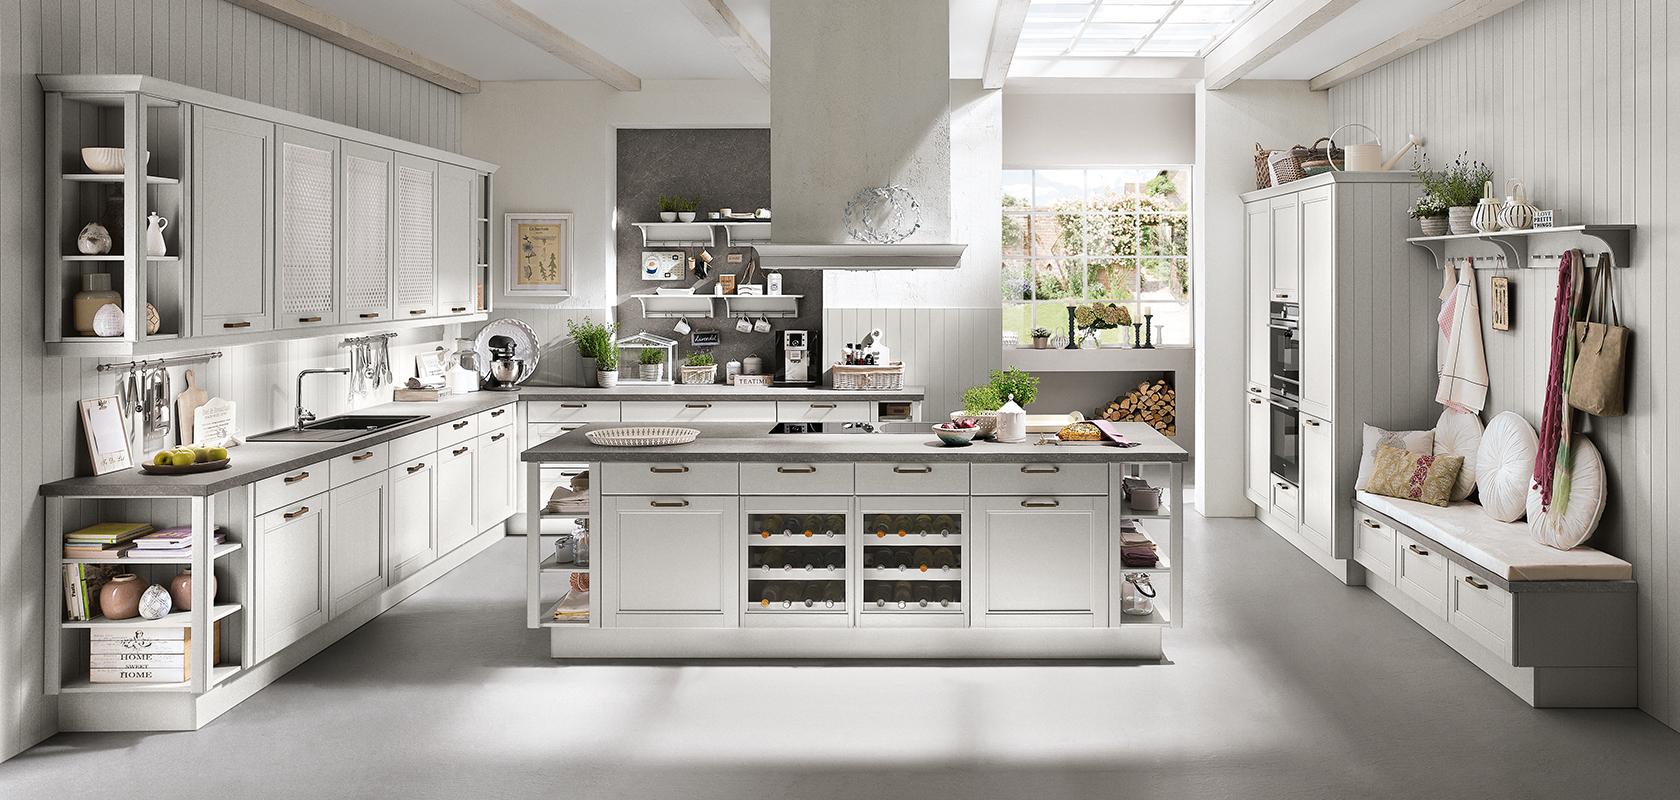 Eine helle, moderne Küche mit weißen Schränken, zentralem Küchenblock und Edelstahlgeräten, die ein elegantes und sauberes Design präsentiert.